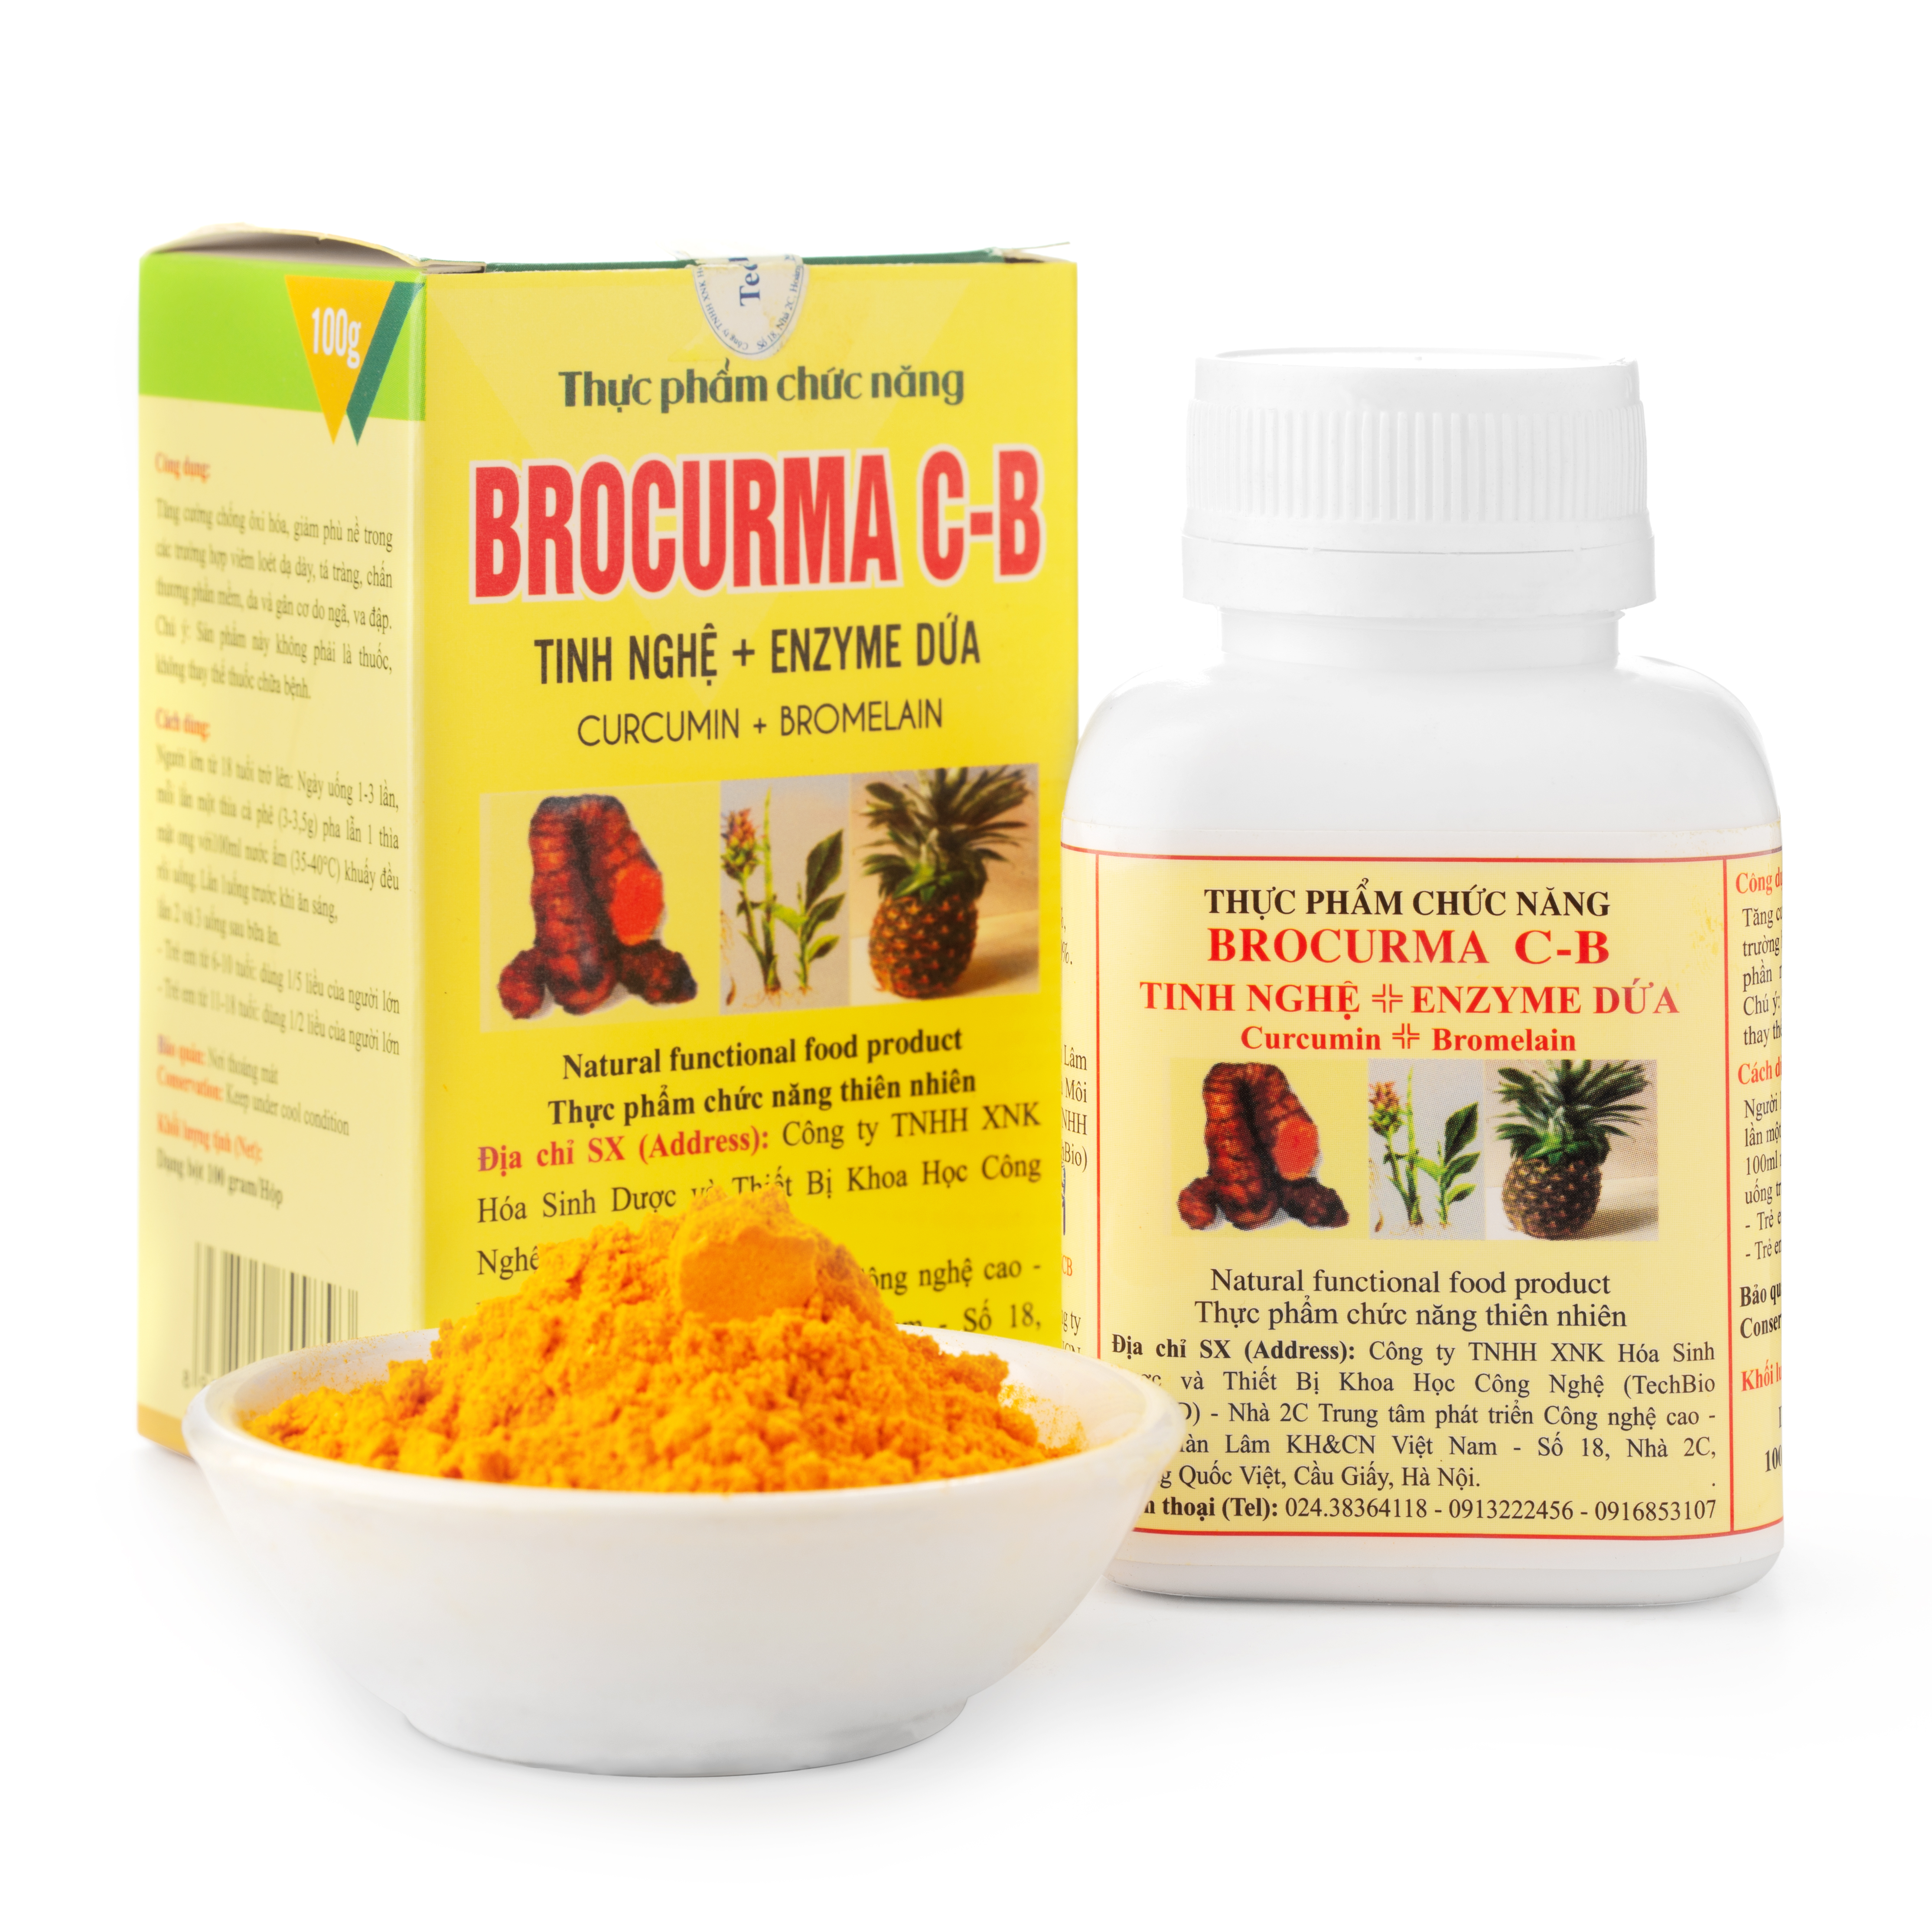 BROCURMA C-B Tinh Nghệ + Enzyme Dứa